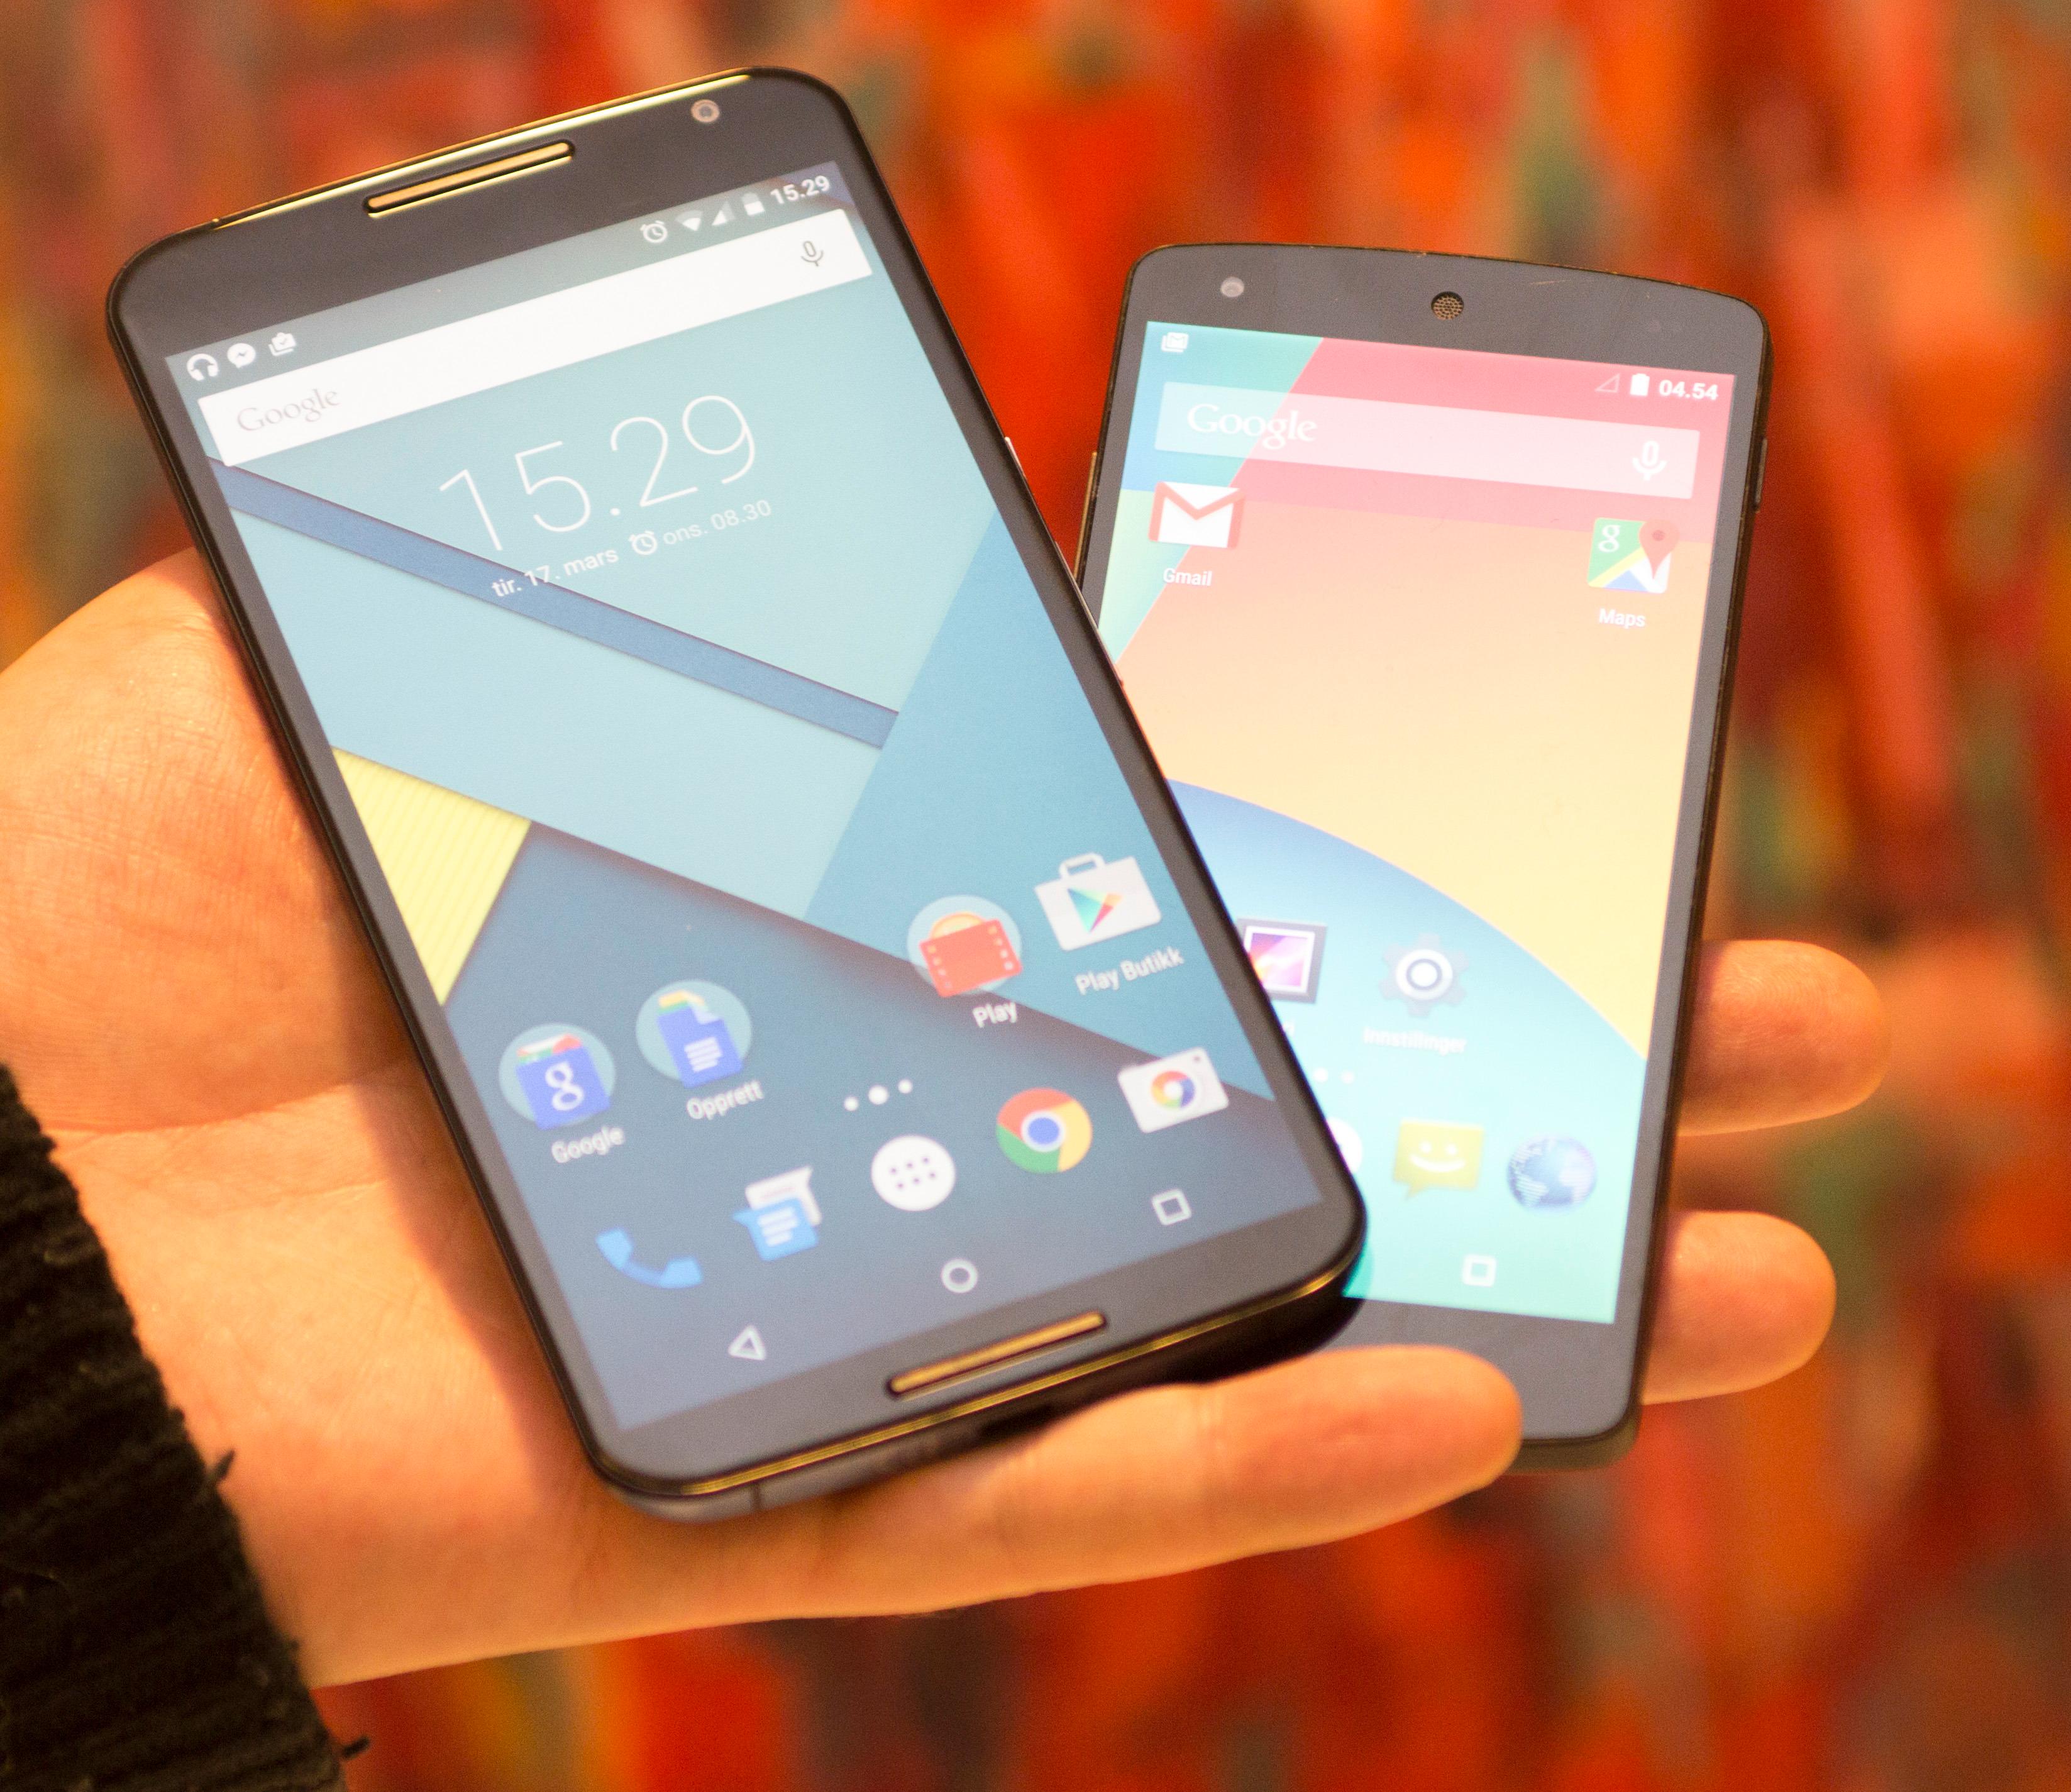 Nexus 6 (foran) er en vesentlig større telefon enn forgjengeren, Nexus 5. I dag får vi sannsynligvis se både en stor og en liten ny Nexus fra Google. Foto: Kurt Lekanger, Tek.no